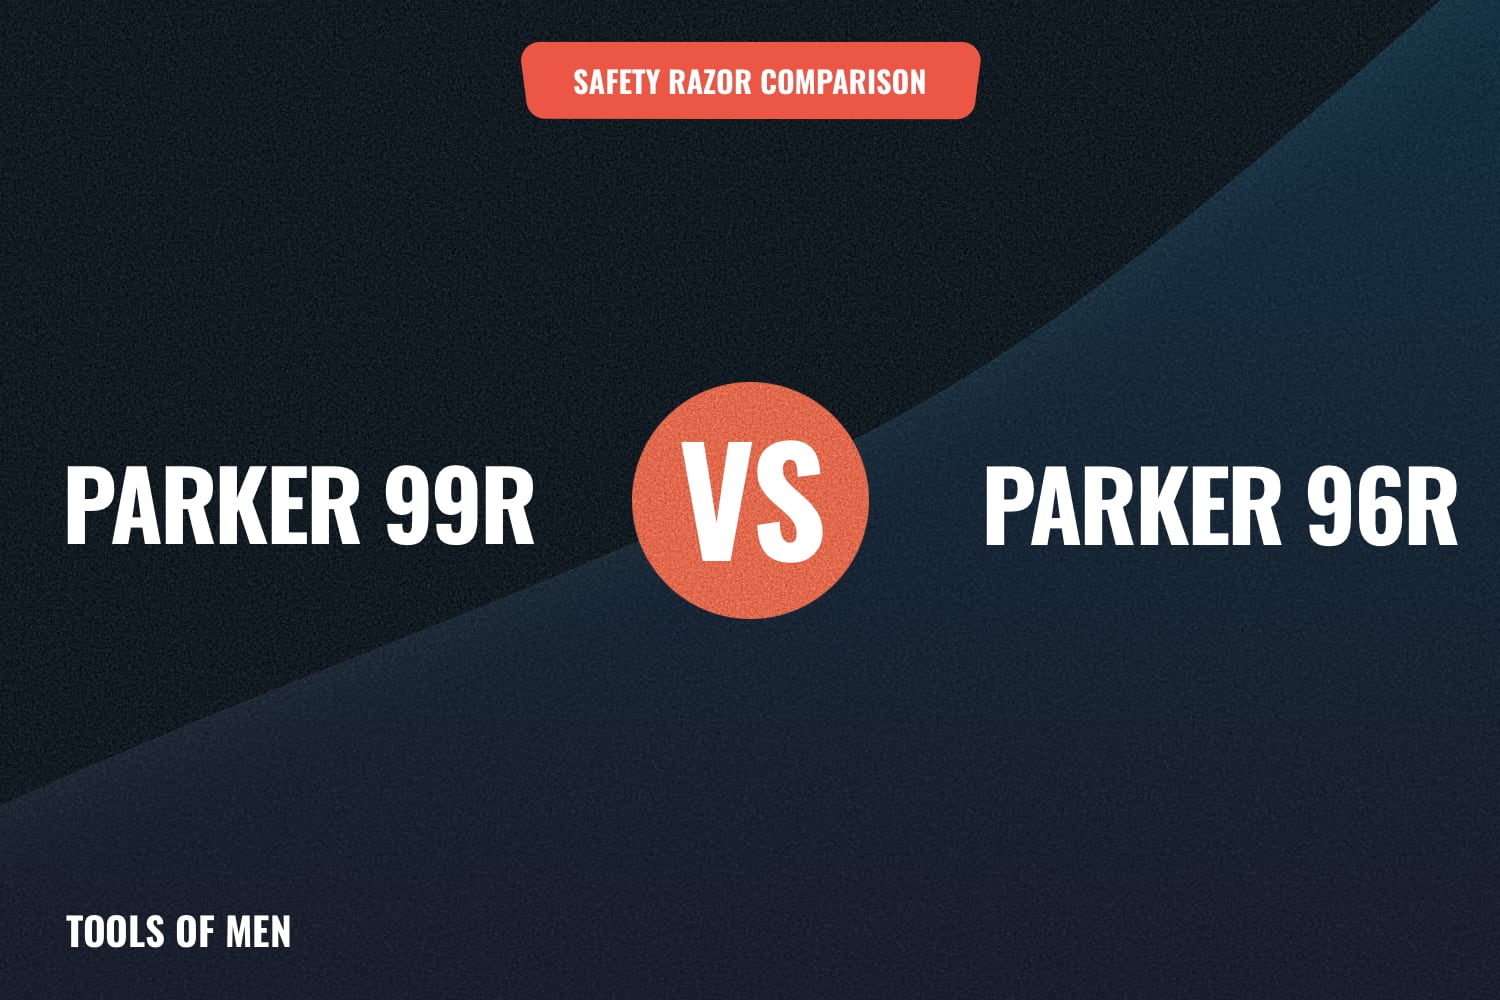 Parker 99R vs Parker 96R feature image